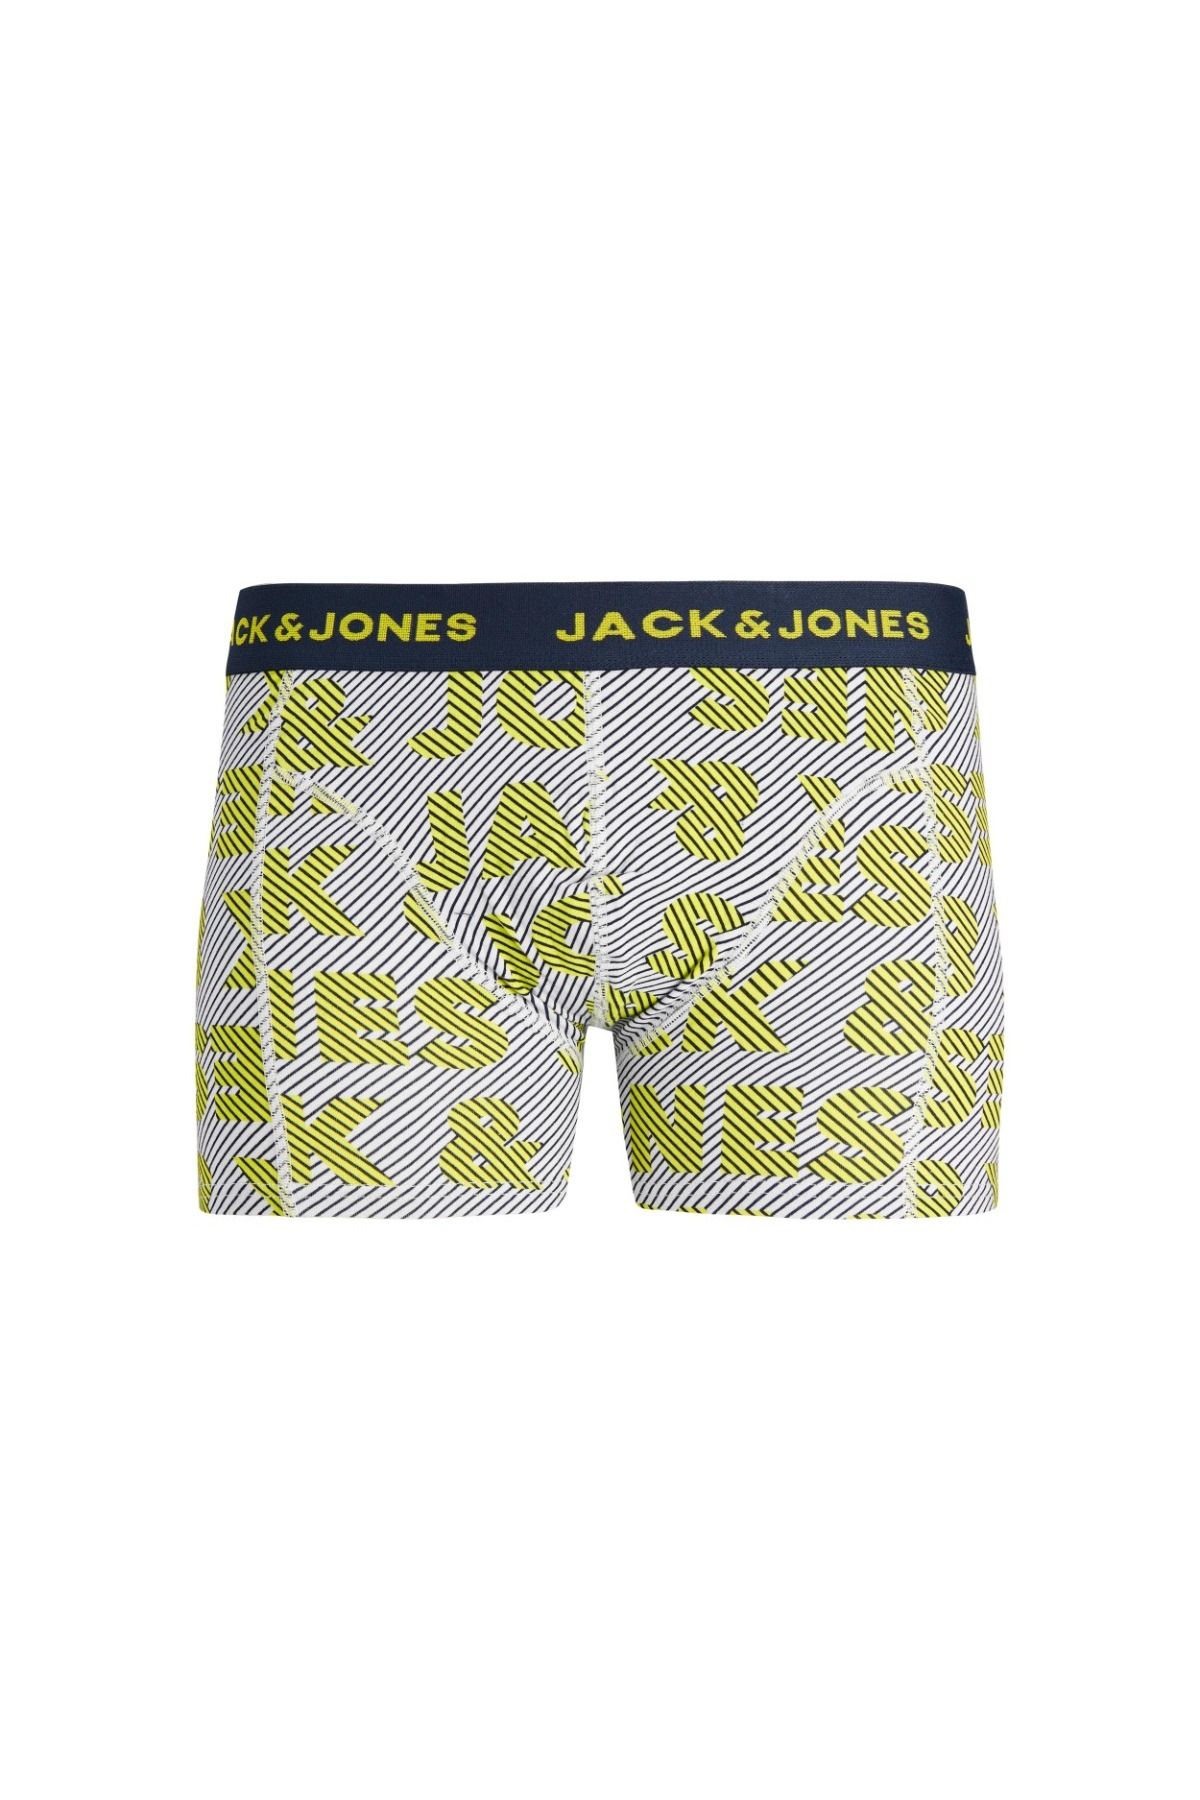 Jack & Jones Jack&jones Logo Illusion Erkek Iç Çamaşır